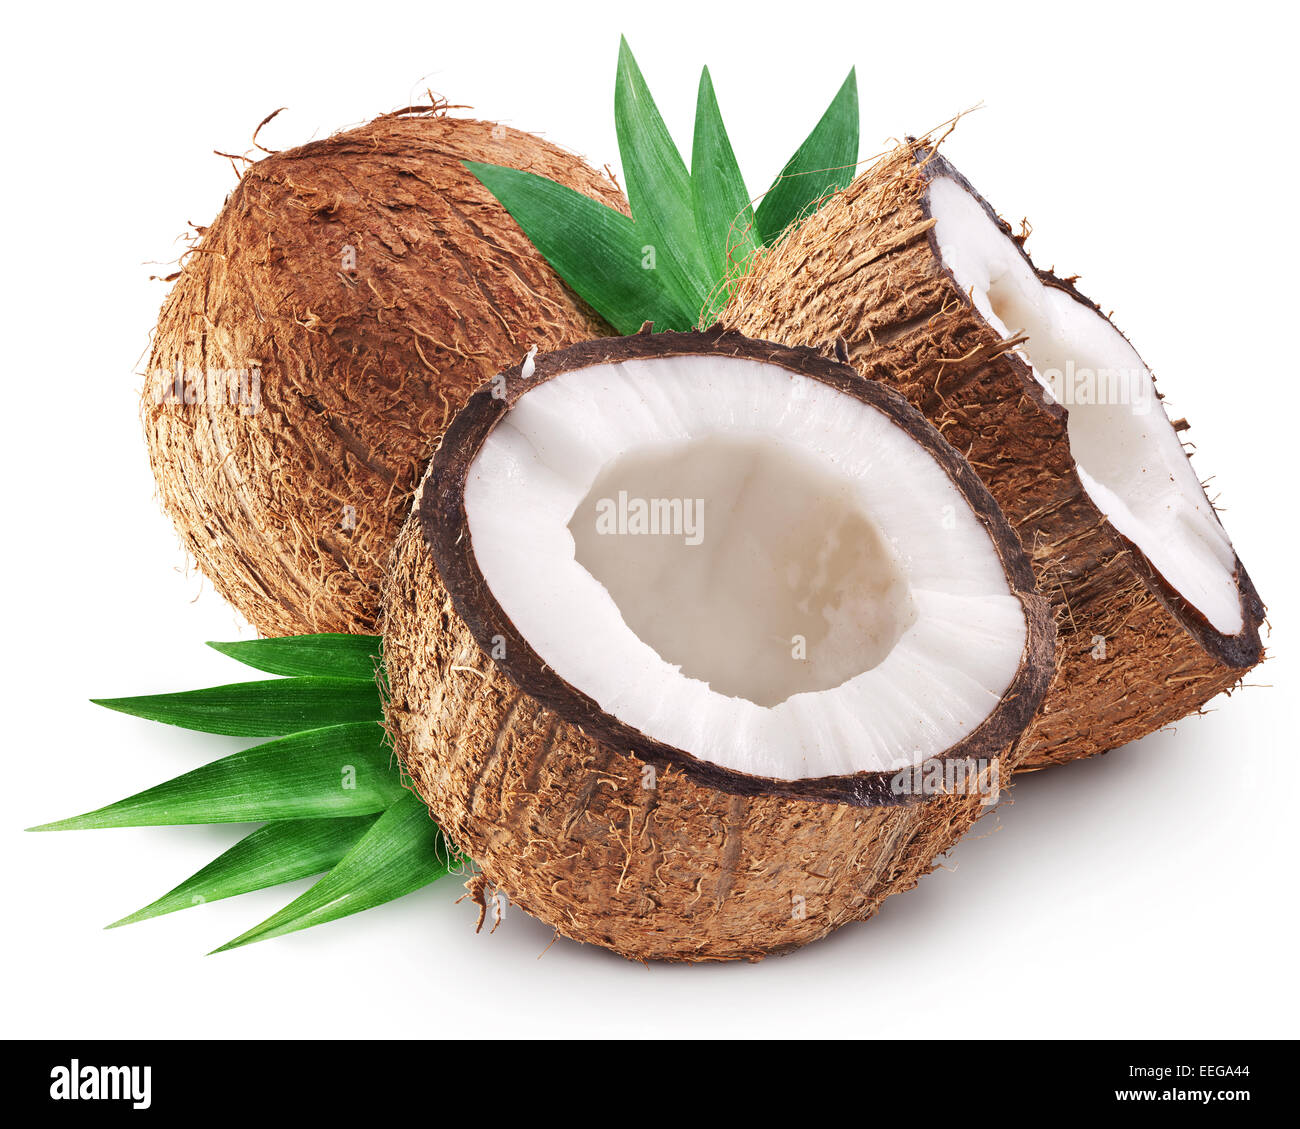 Kokosnüsse und es ist die Hälfte mit Blättern. Datei enthält Beschneidungspfade. Stockfoto